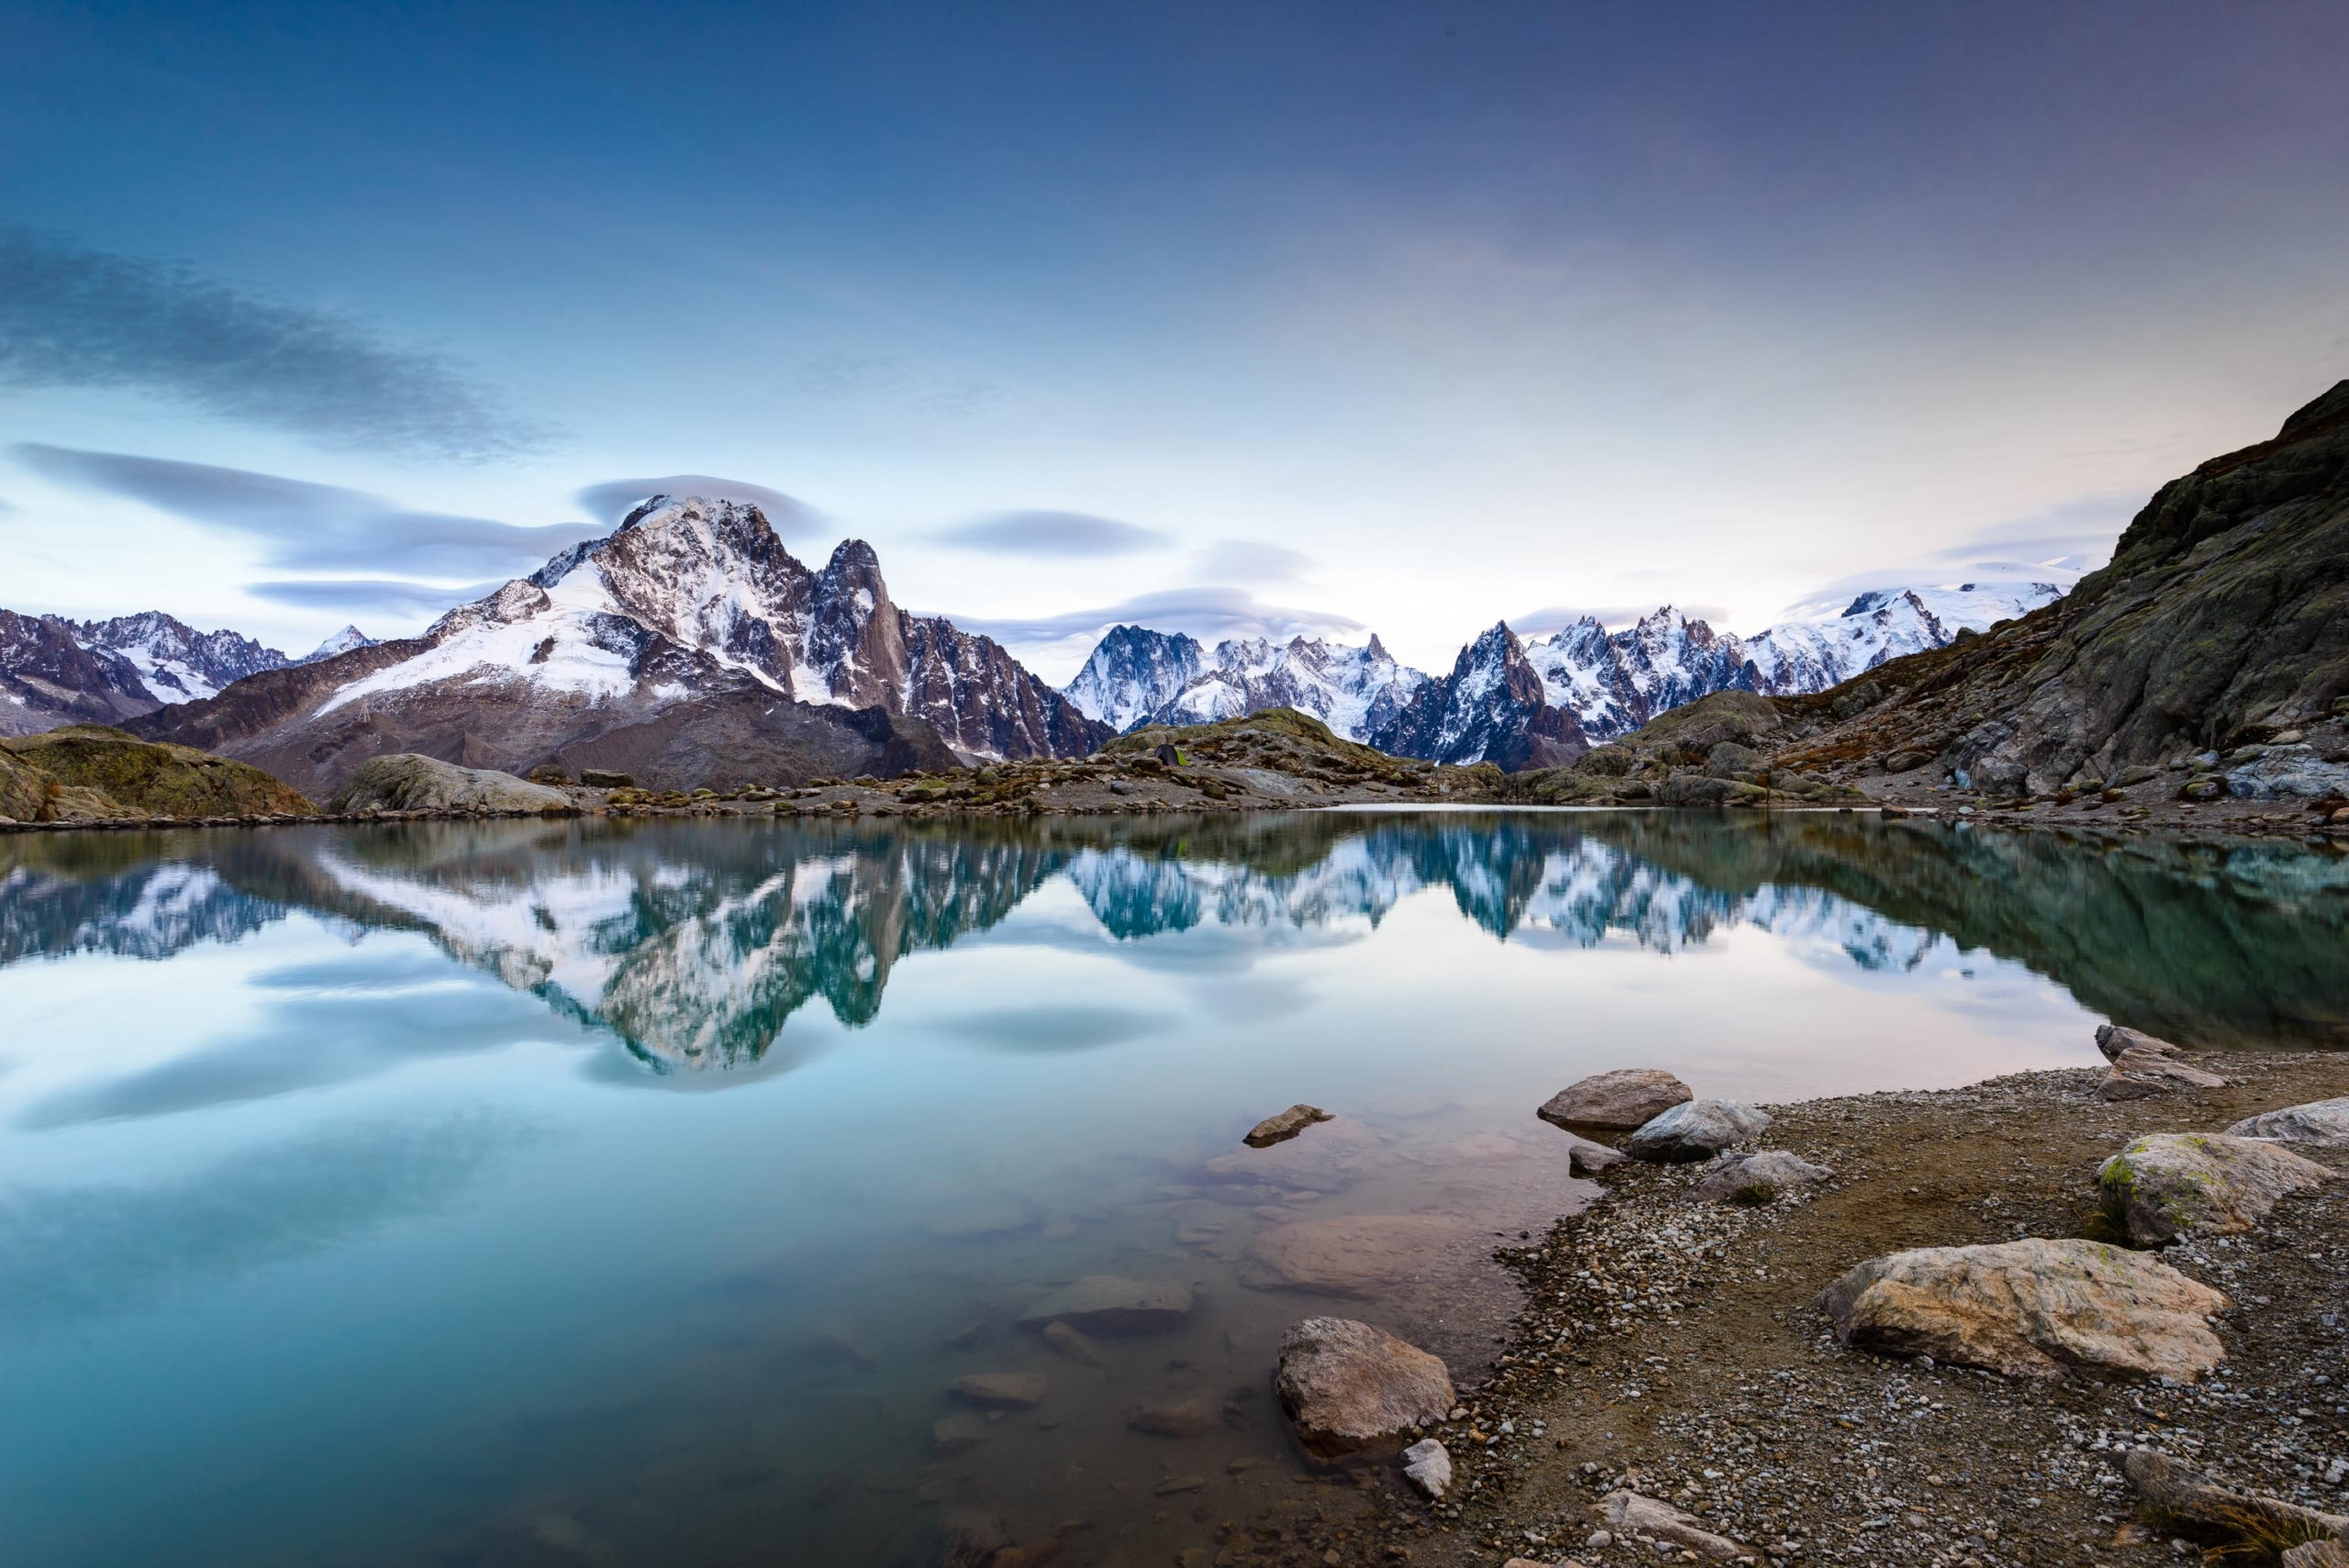 Les sommets mythiques de Chamonix se reflètent dans le Lac Blanc.